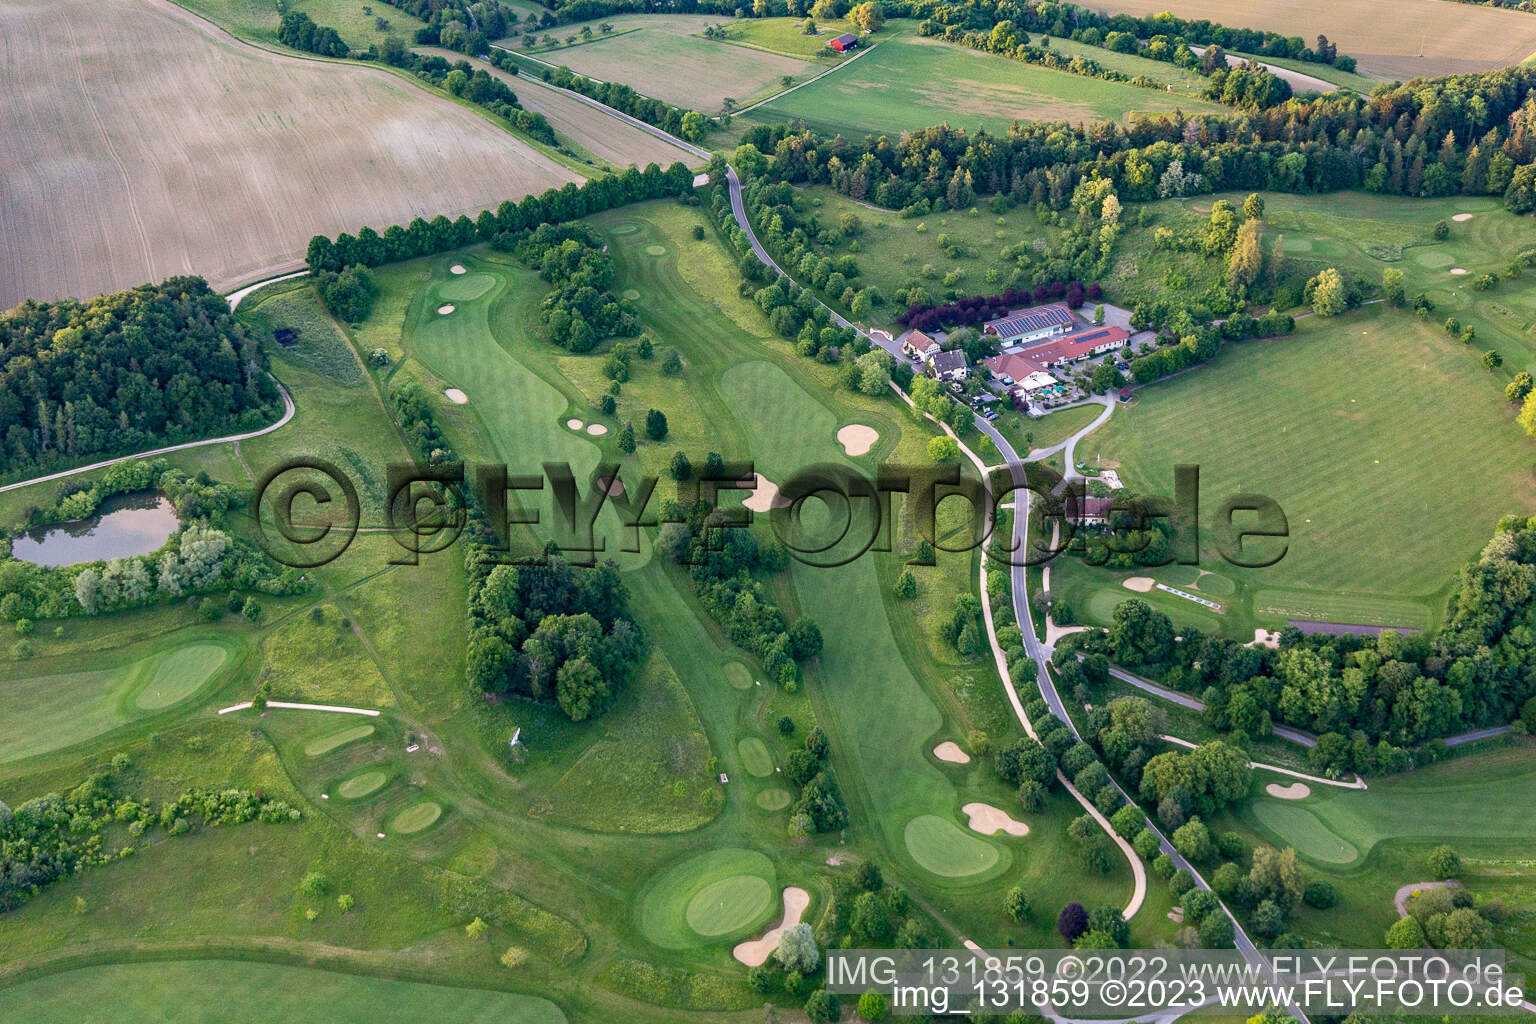 Photographie aérienne de Le Country Club Schloss Langenstein - Le parcours de golf au bord du lac de Constance à Orsingen-Nenzingen dans le département Bade-Wurtemberg, Allemagne